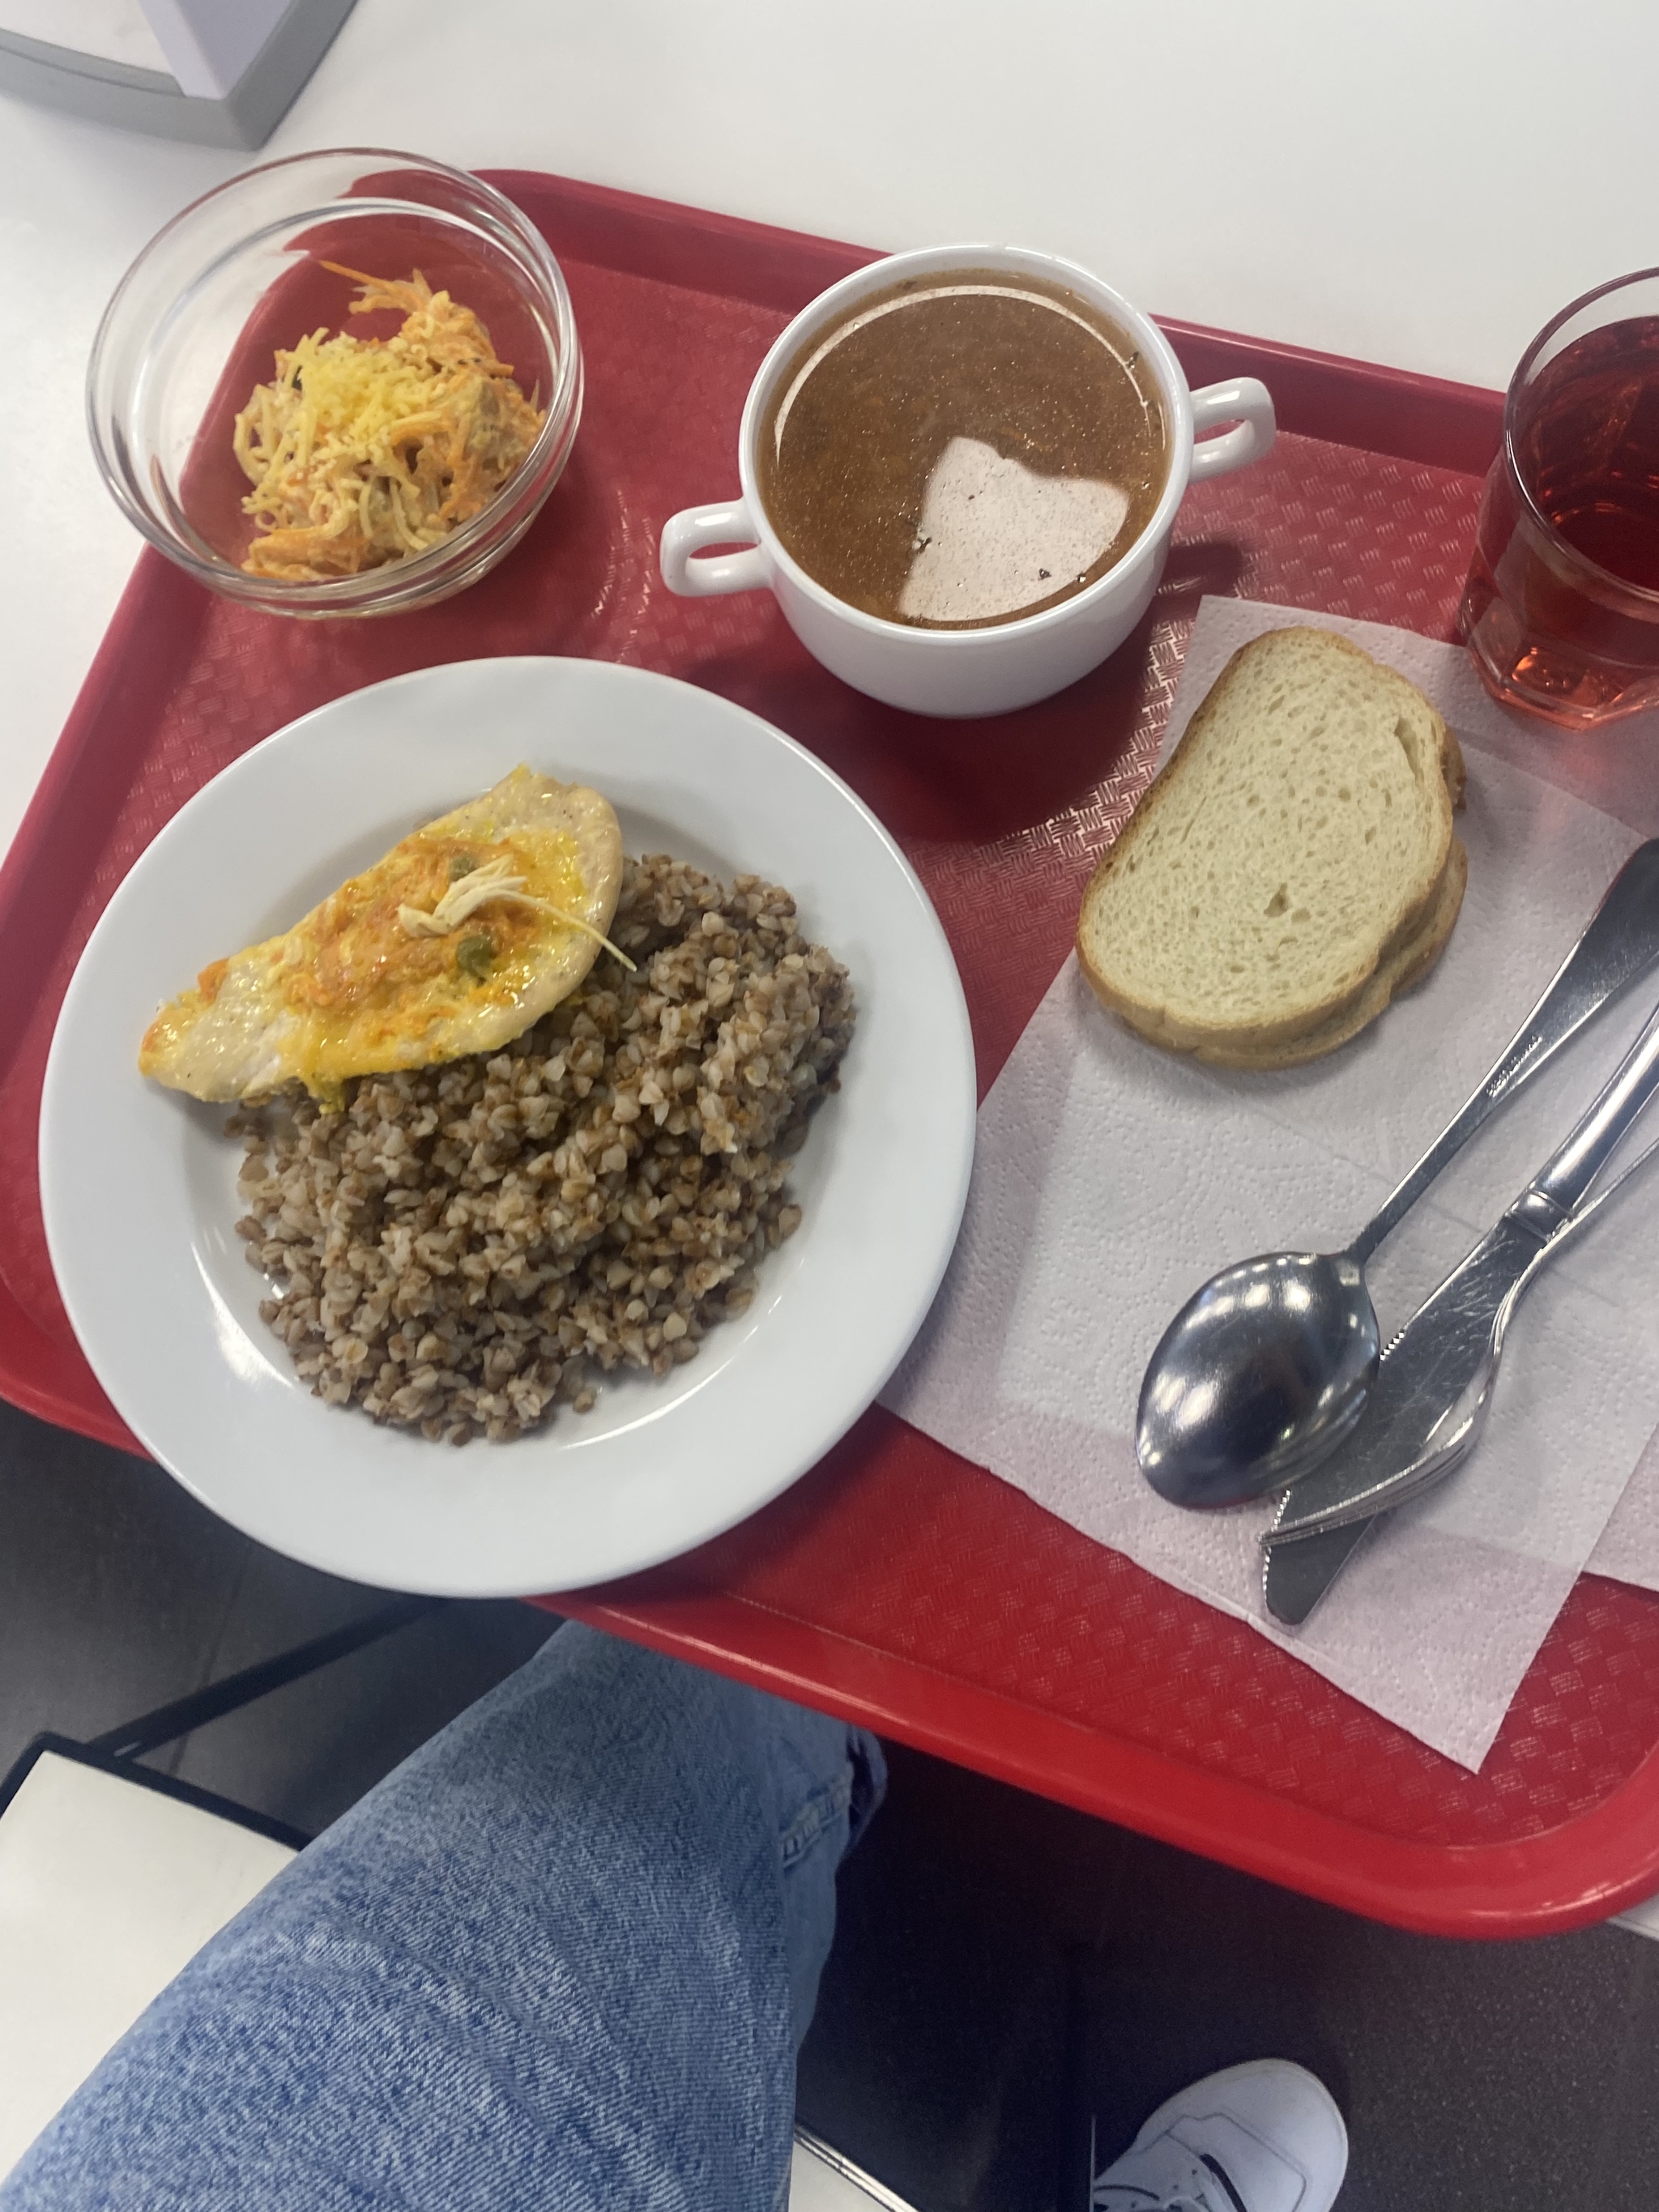 Обеды в столовой на работе | Пикабу